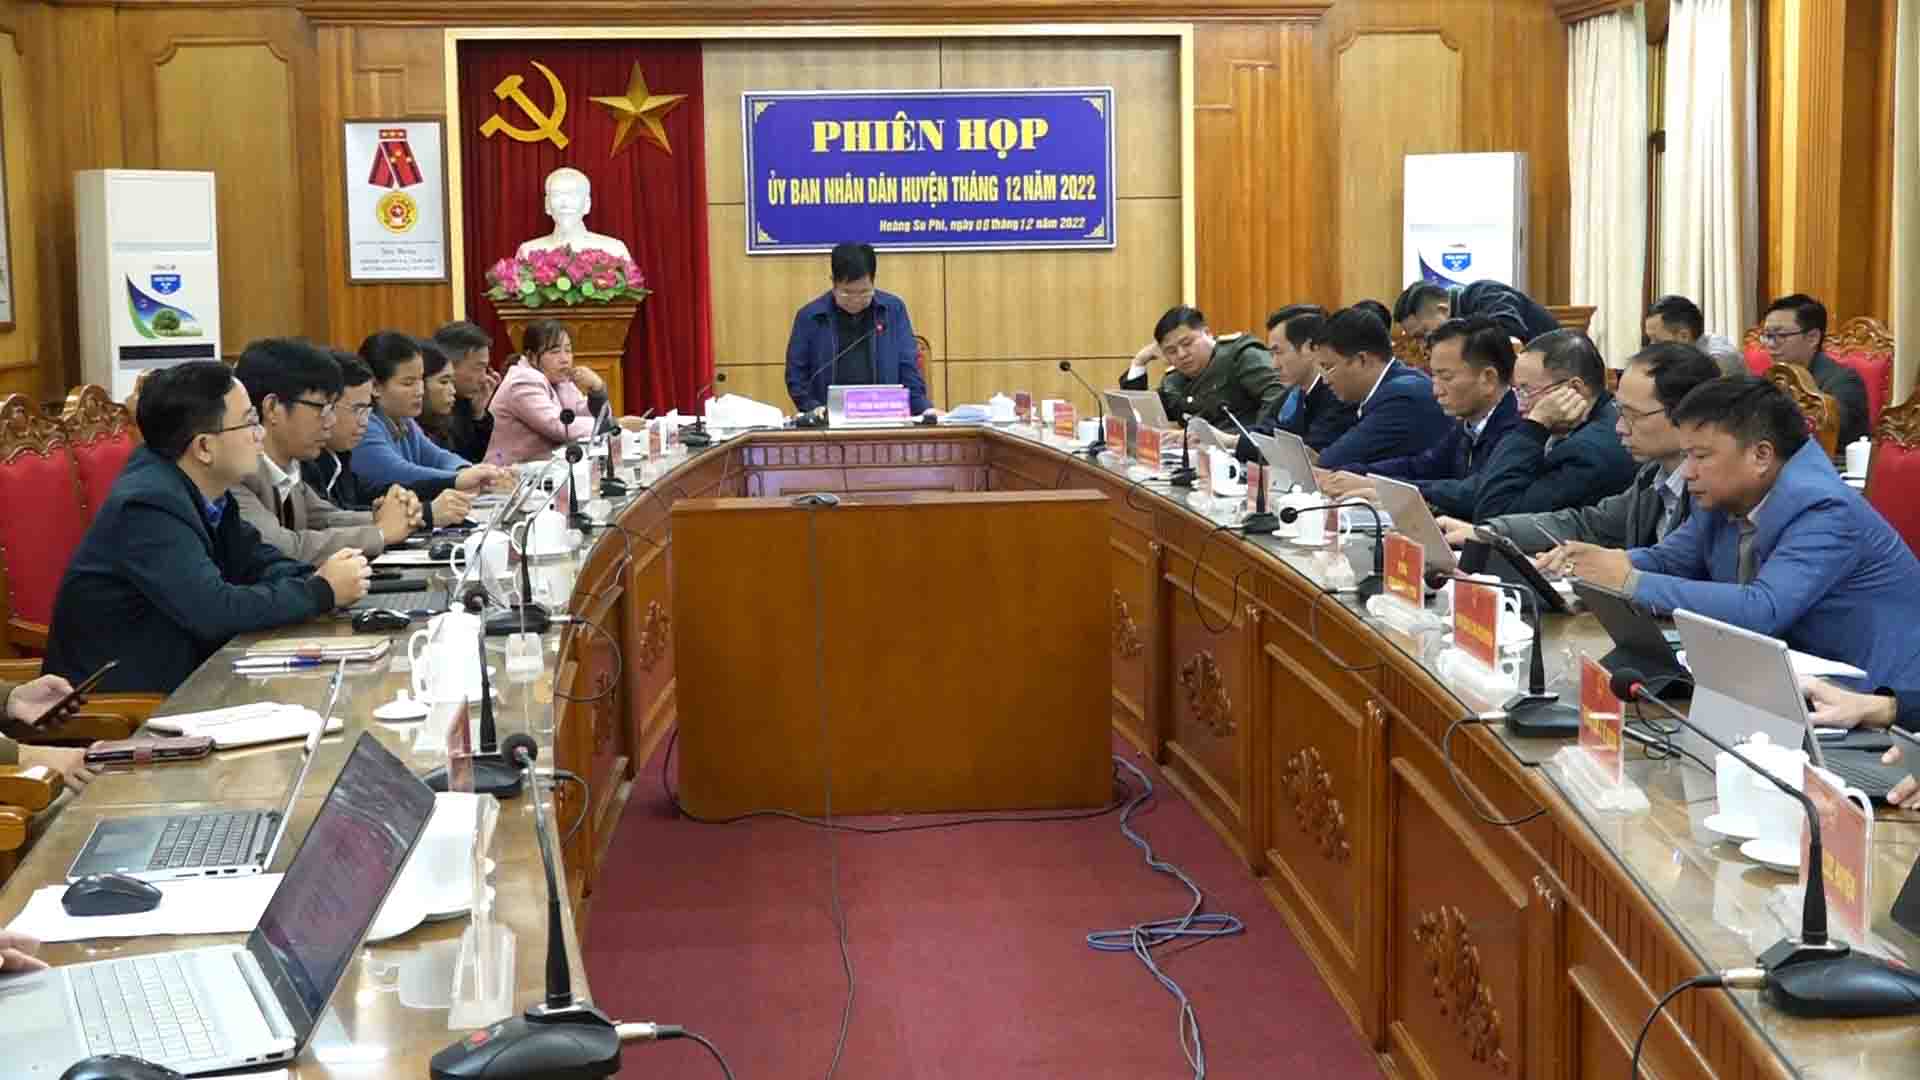 UBND huyện Hoàng Su Phì họp thành viên trực tuyến tháng 12 năm 2022